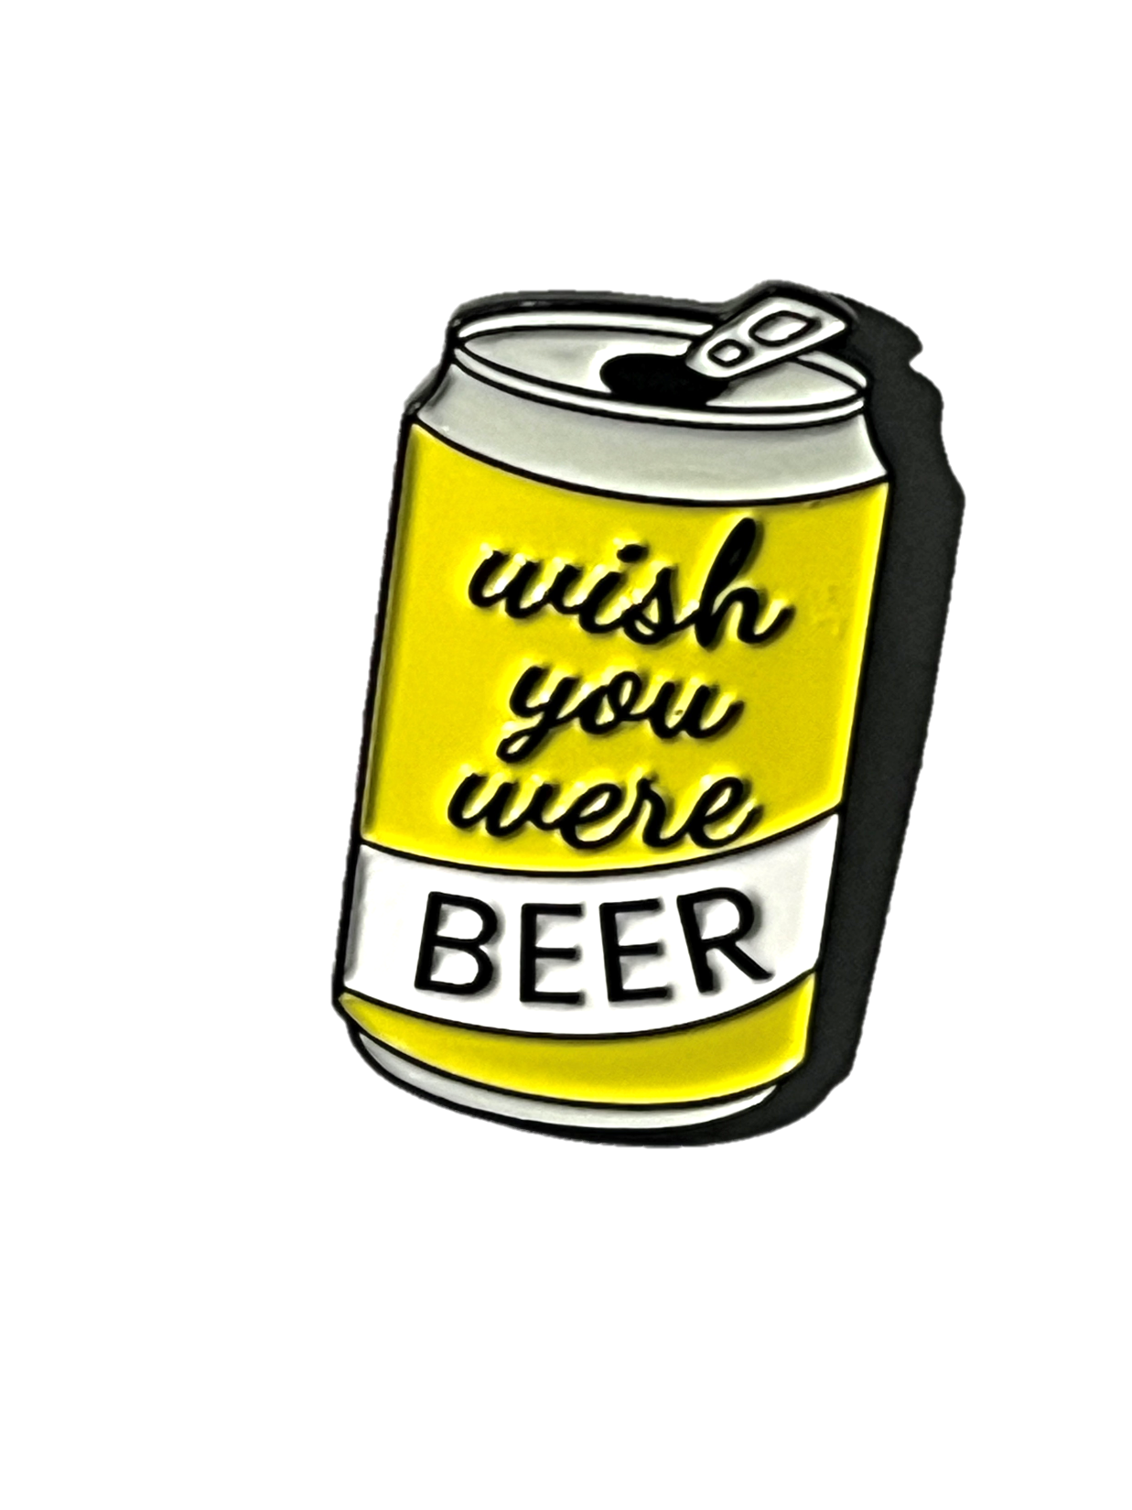 Wish you were Beer!